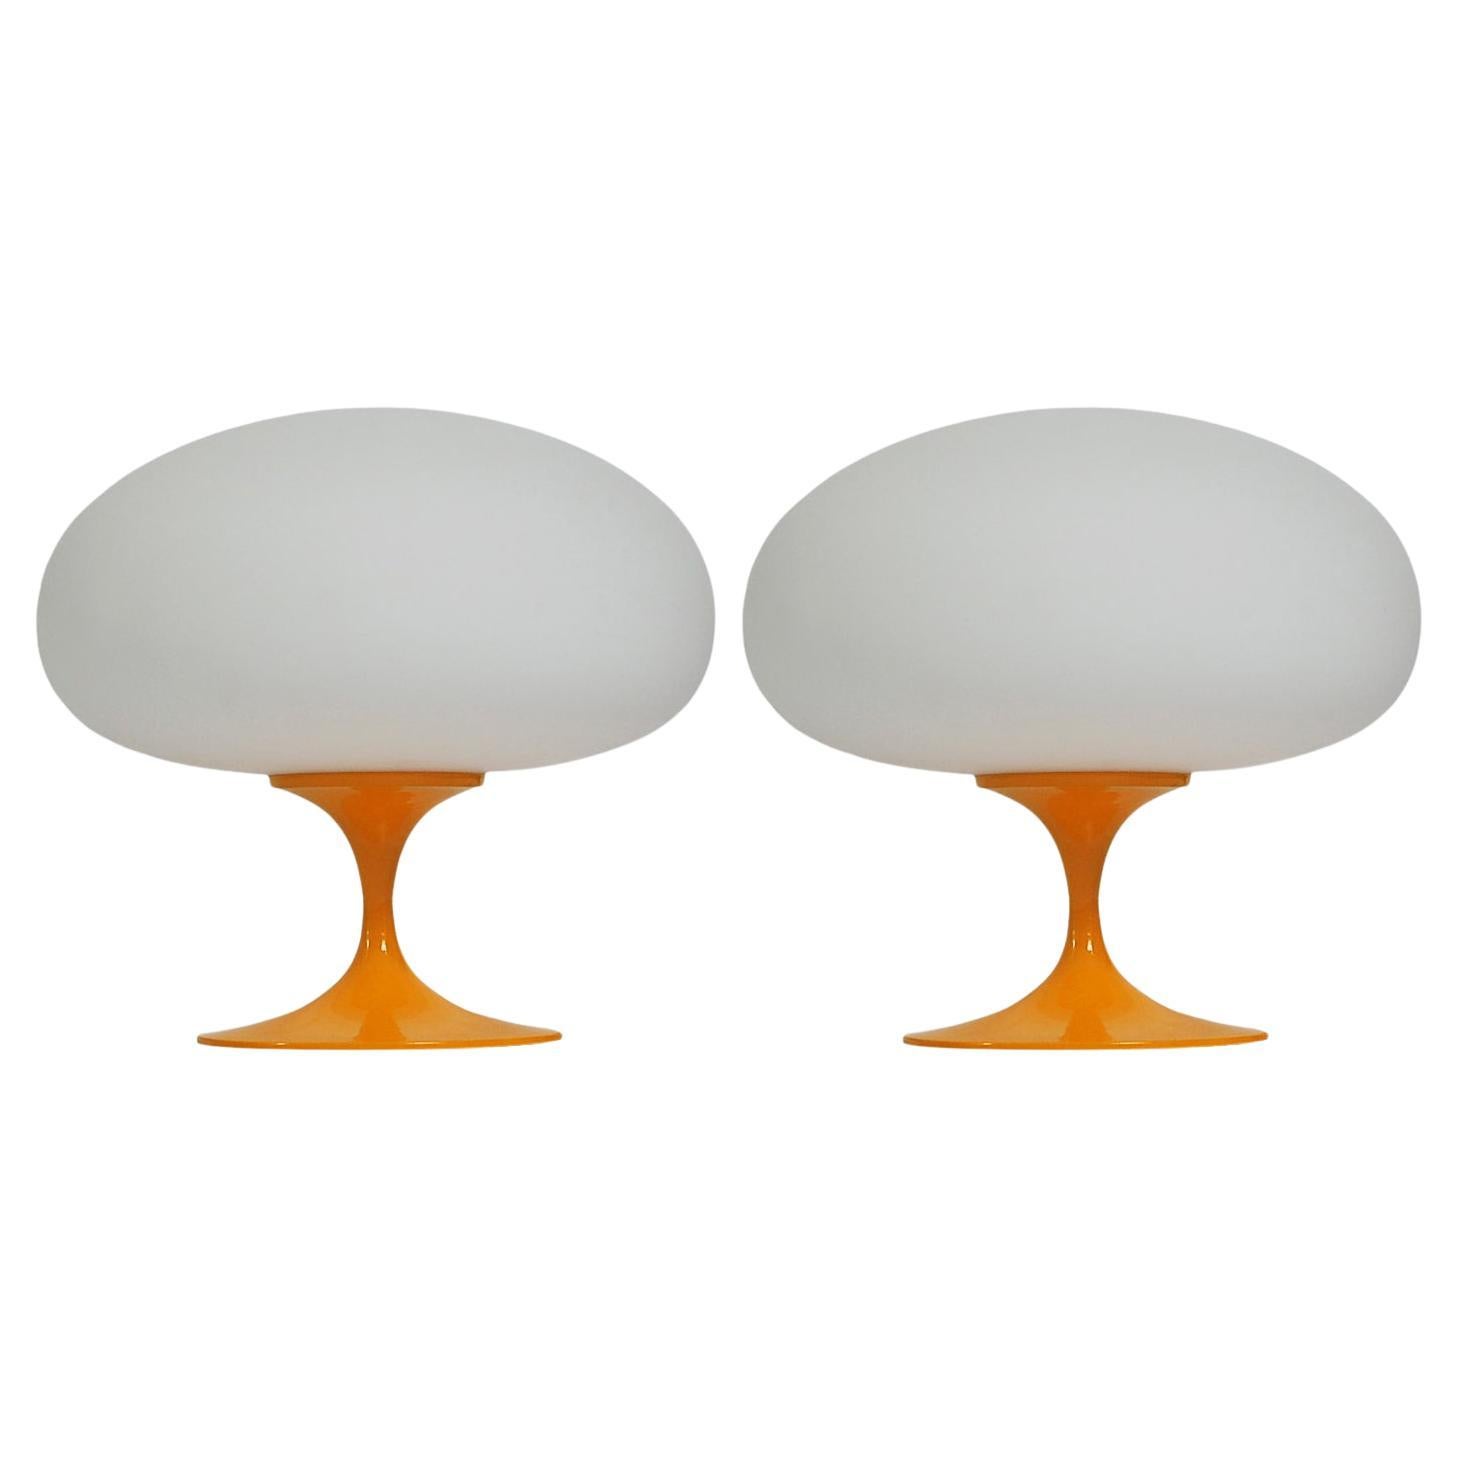 Paire de lampes de bureau tulipe de style mi-siècle moderne par Designline en verre orange sur blanc